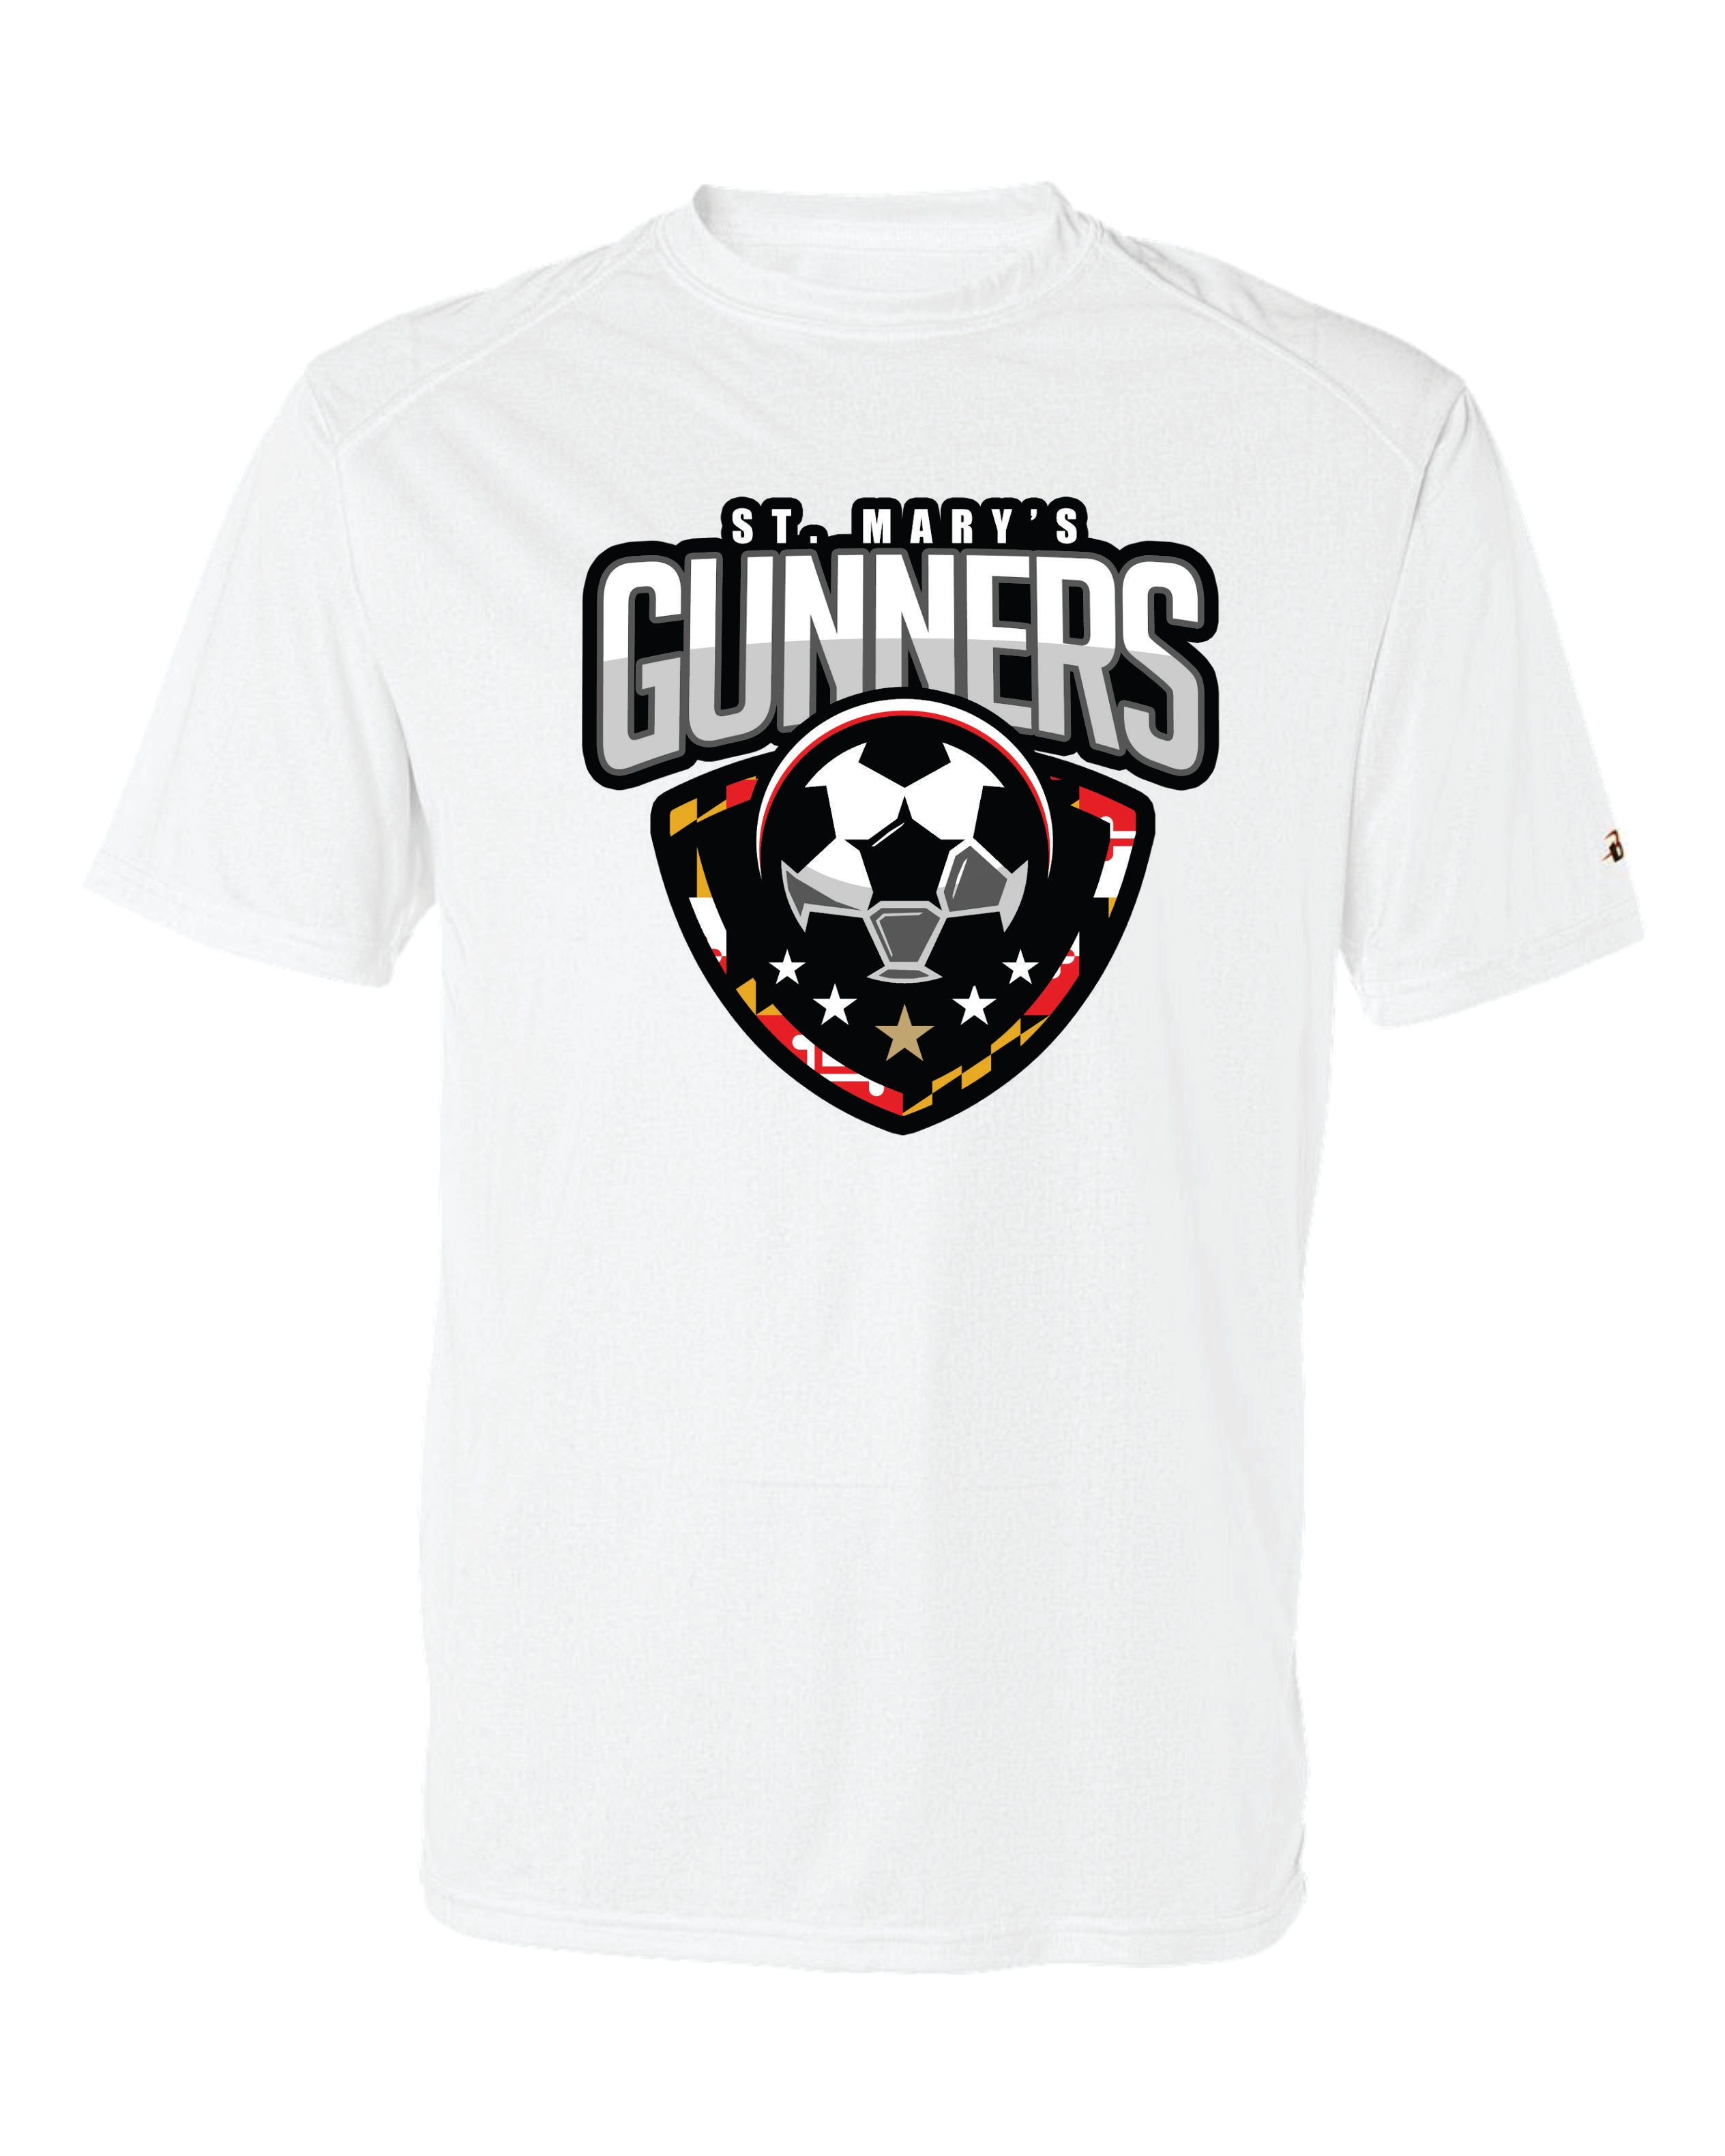 Gunners Short Sleeve Badger Dri Fit T shirt